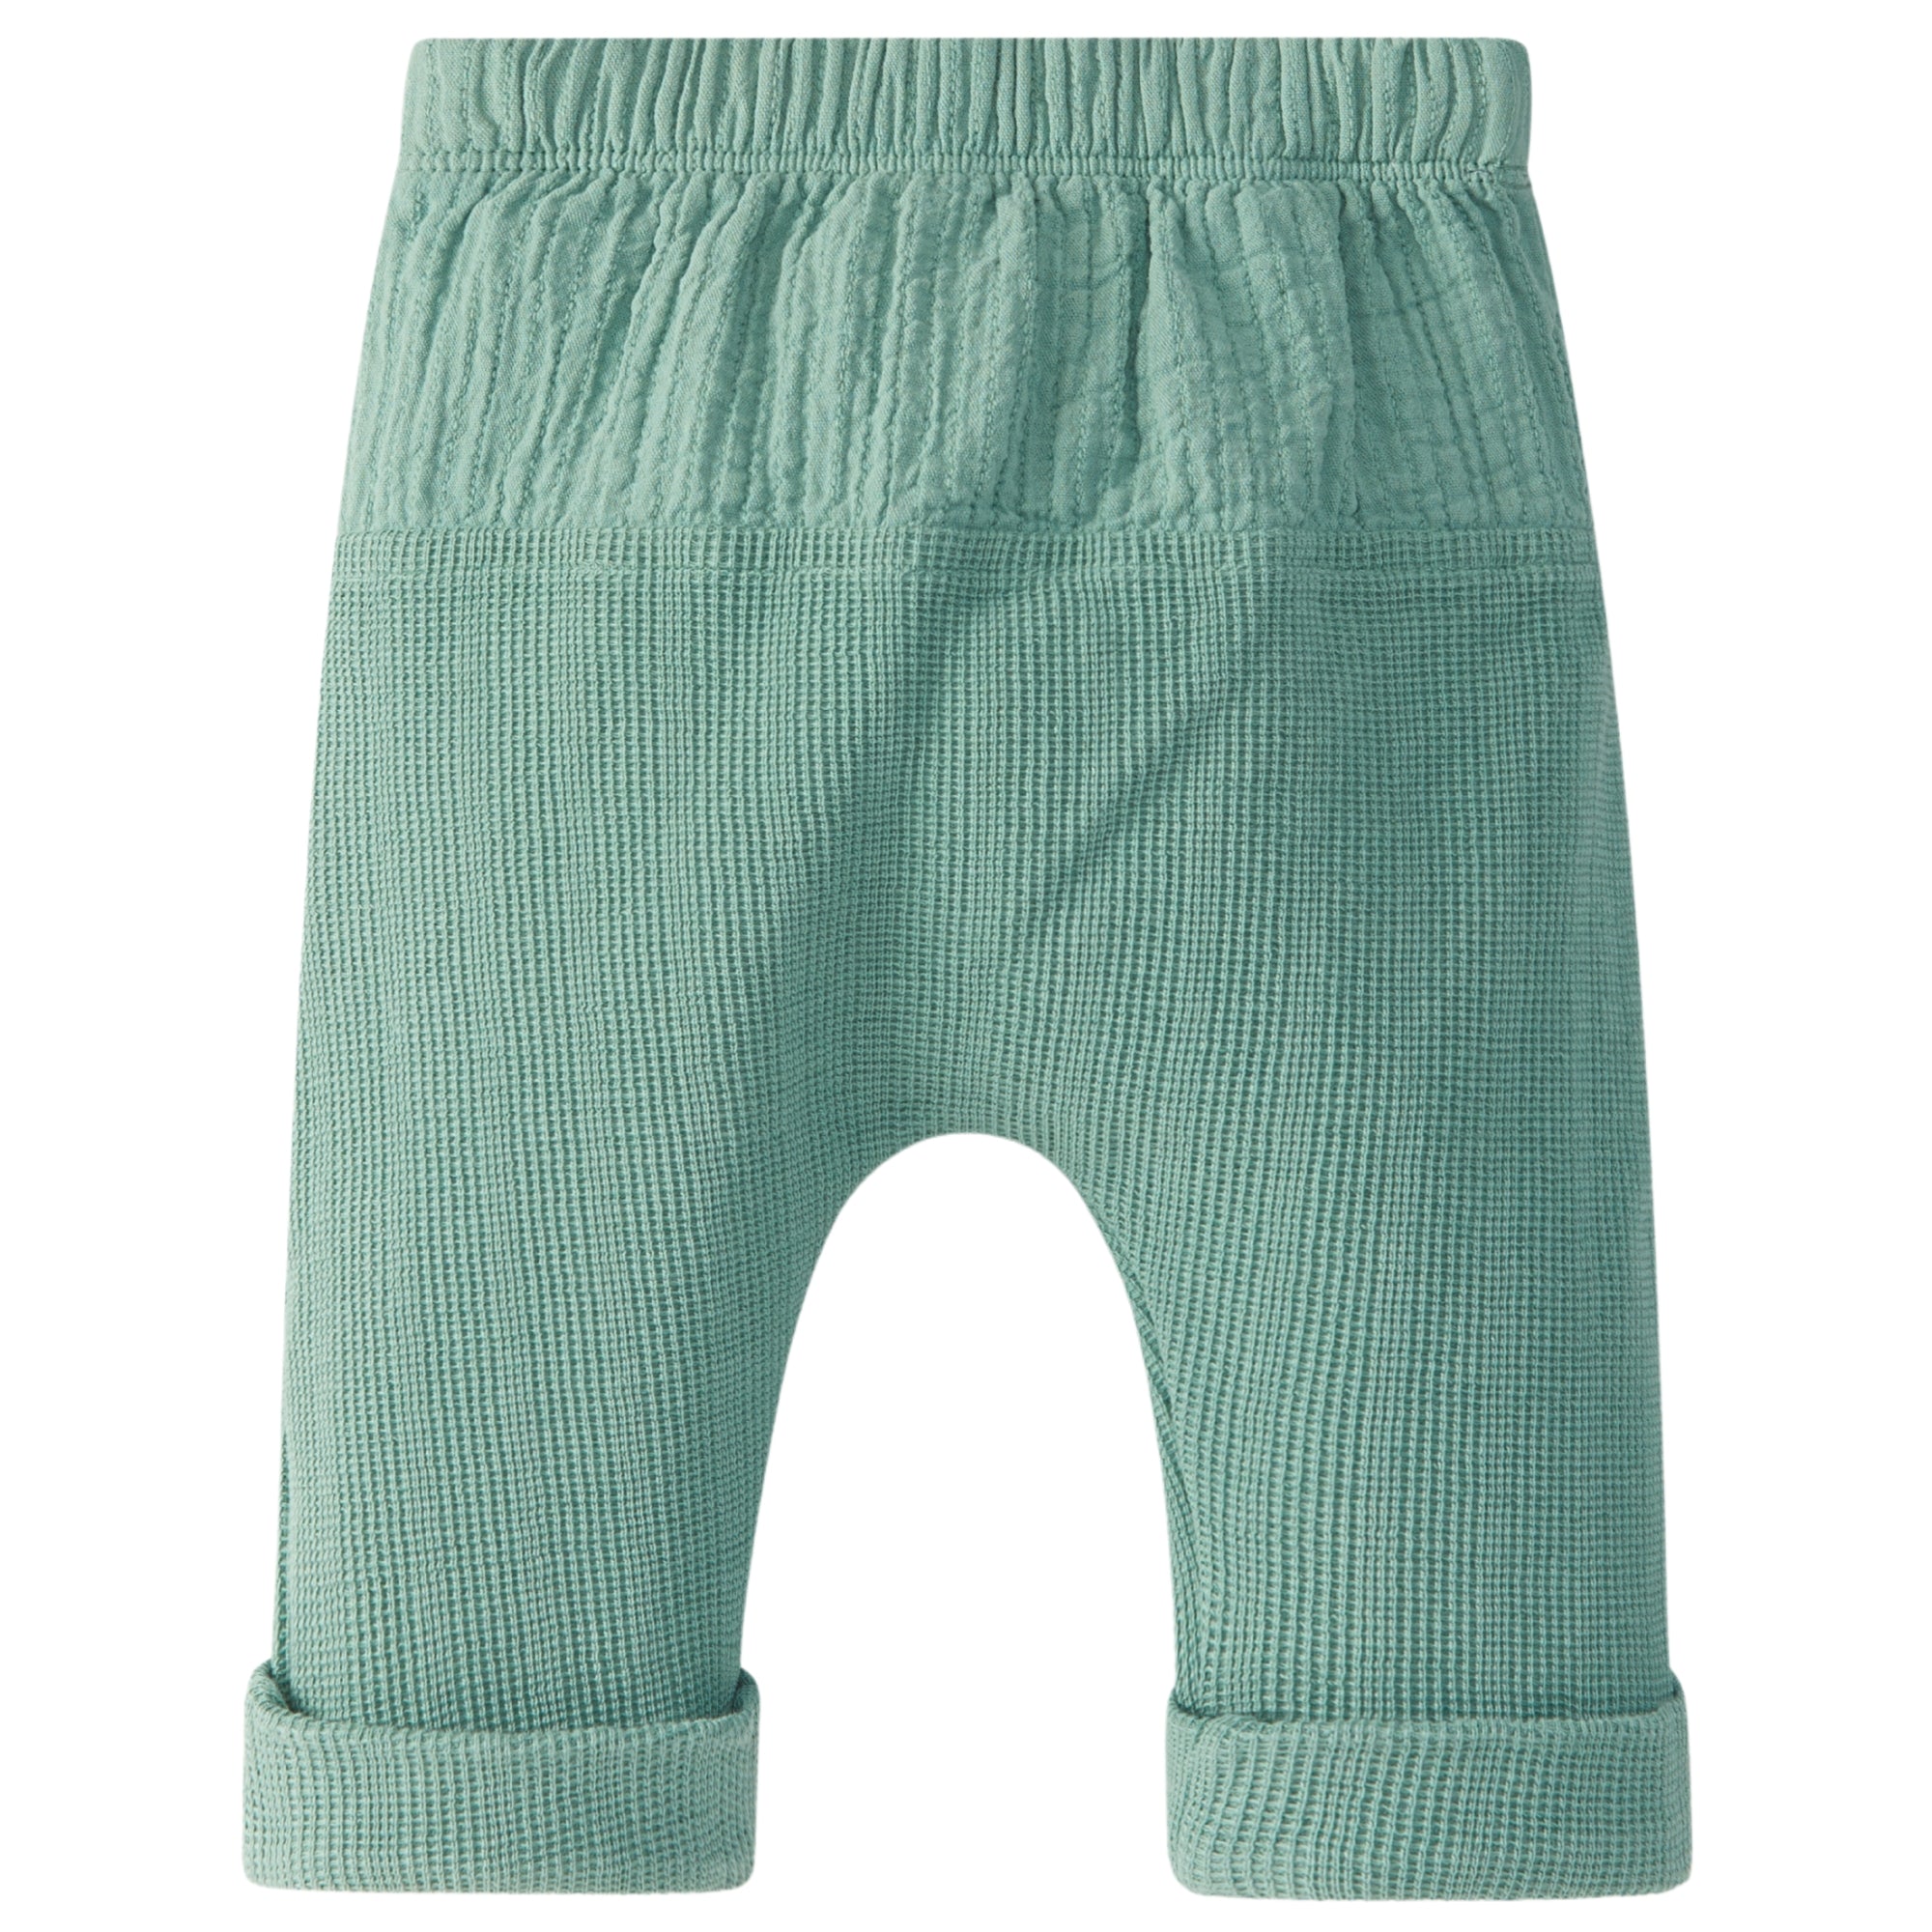 pantalone-in-cotone-colore-verde